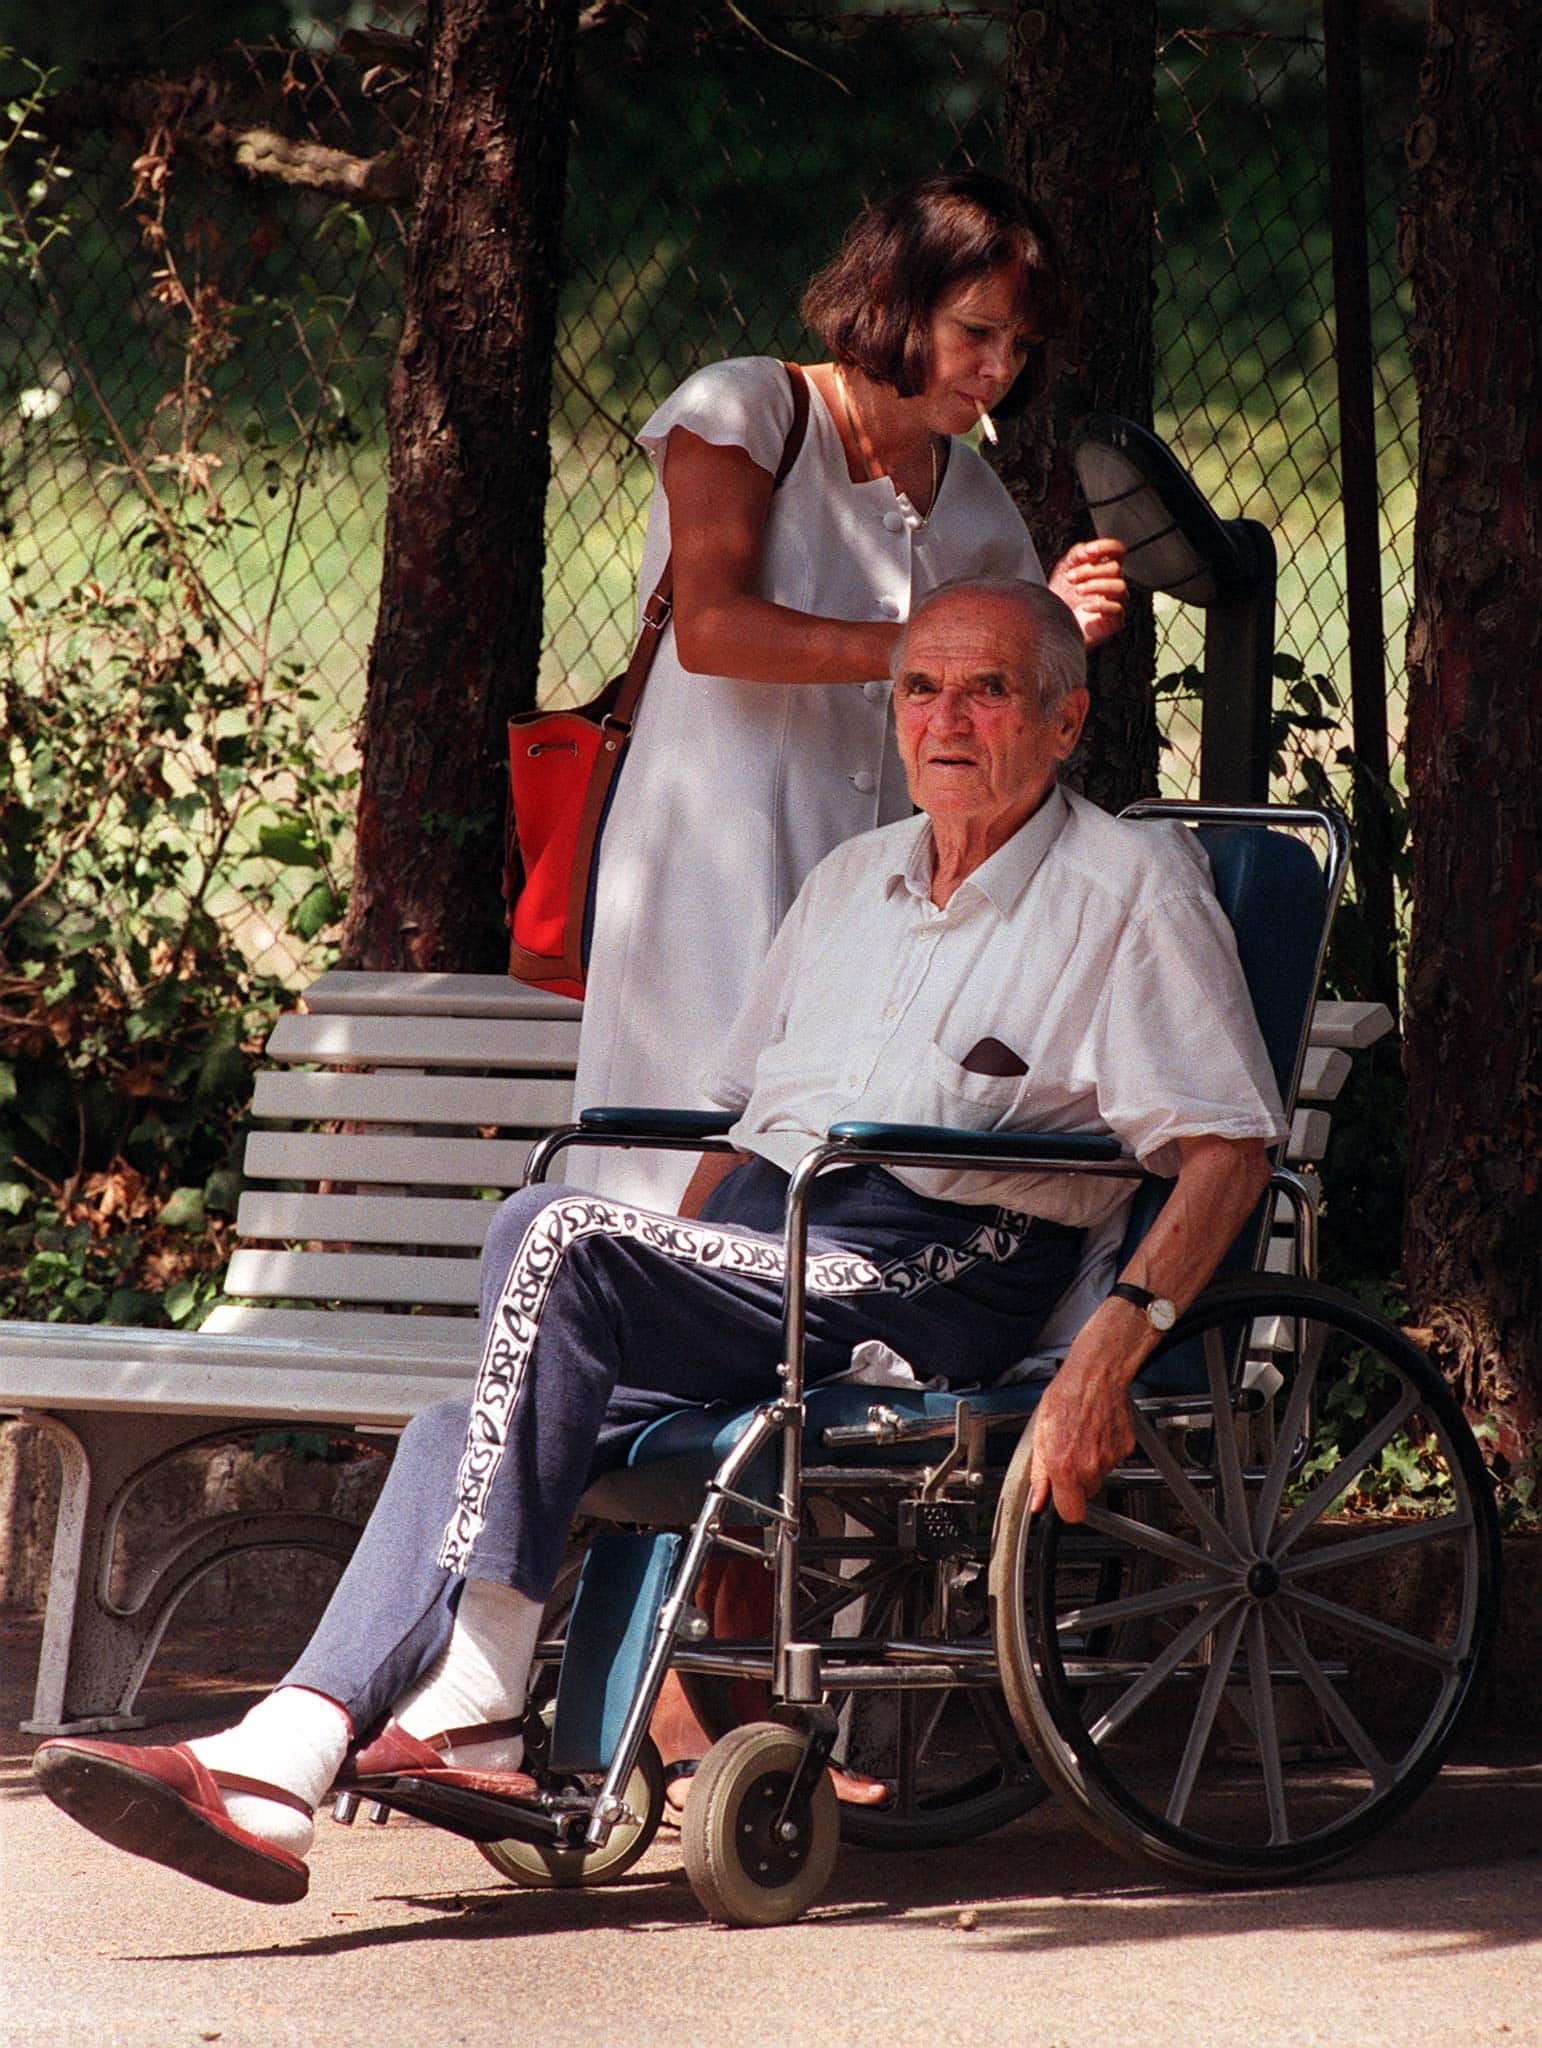 קצין האס אס לשעבר קארל האס נעזר בבתו ארניקה בבית האבות הנסתר שלו בגבעות מחוץ לרומא. יולי, 1993 (צילום: AP Photo/Angelo Scipioni)